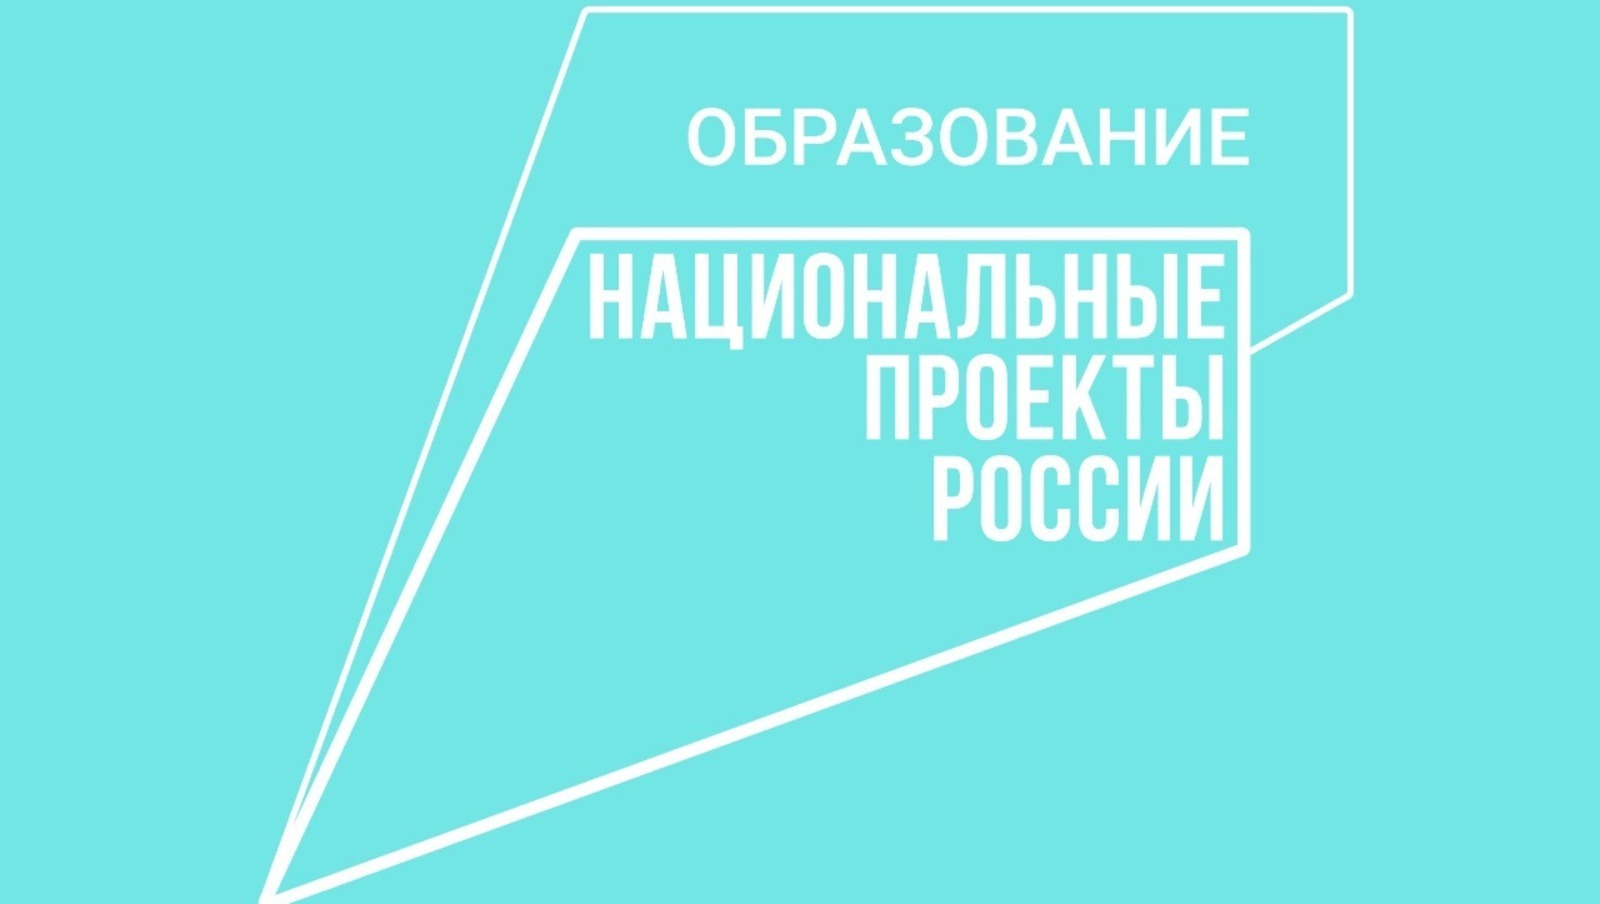 Башкирия привлекла более 90 млн рублей из федерального бюджета в рамках нацпроекта «Образование»